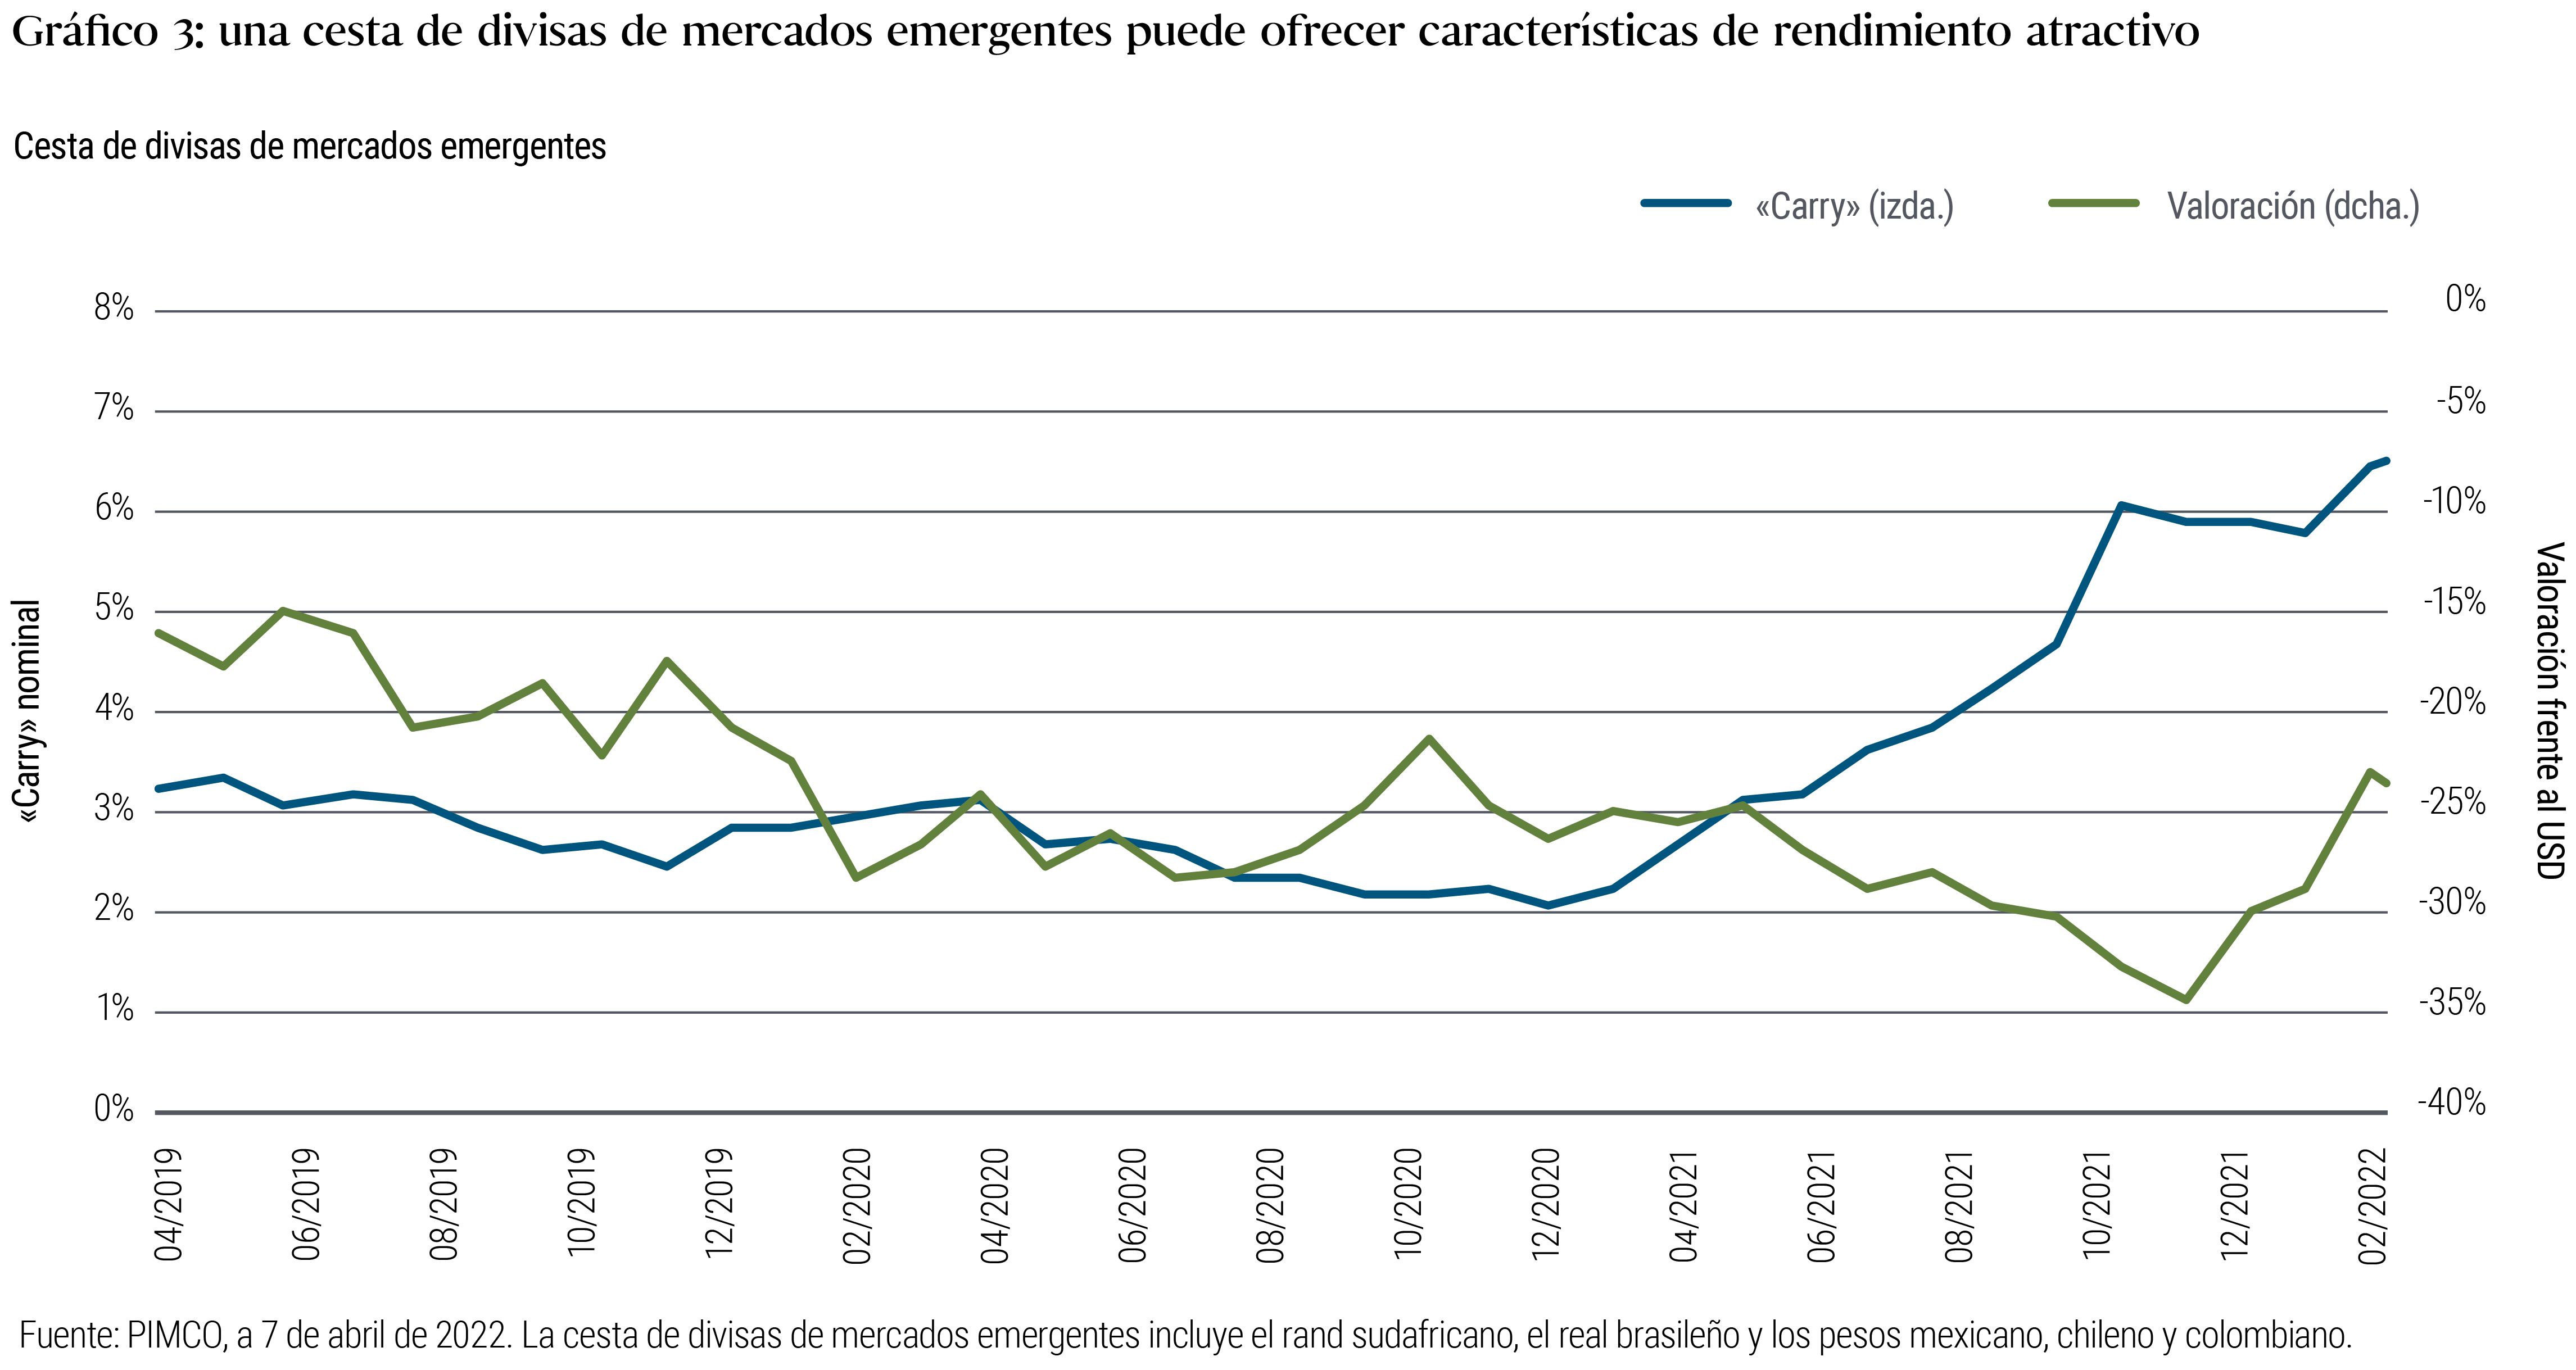 El gráfico 3 es un gráfico de líneas que va de abril de 2019 al 7 de abril de 2022, y muestra el «carry» nominal y la valoración (frente al dólar estadounidense) de una cesta de divisas de mercados emergentes, según se detalla en la nota que figura debajo del gráfico. El «carry» nominal de esta cesta de divisas alcanzó su máximo de cerca del 6,5% en abril de 2022, tras subir desde su mínimo de alrededor del 2% registrado a principios de 2021.La valoración ha subido desde su mínimo de en torno del -35% a finales de 2021 hasta aproximadamente el -24% frente al dólar.La valoración llegó a subir hasta el −15% a mediados de 2019.